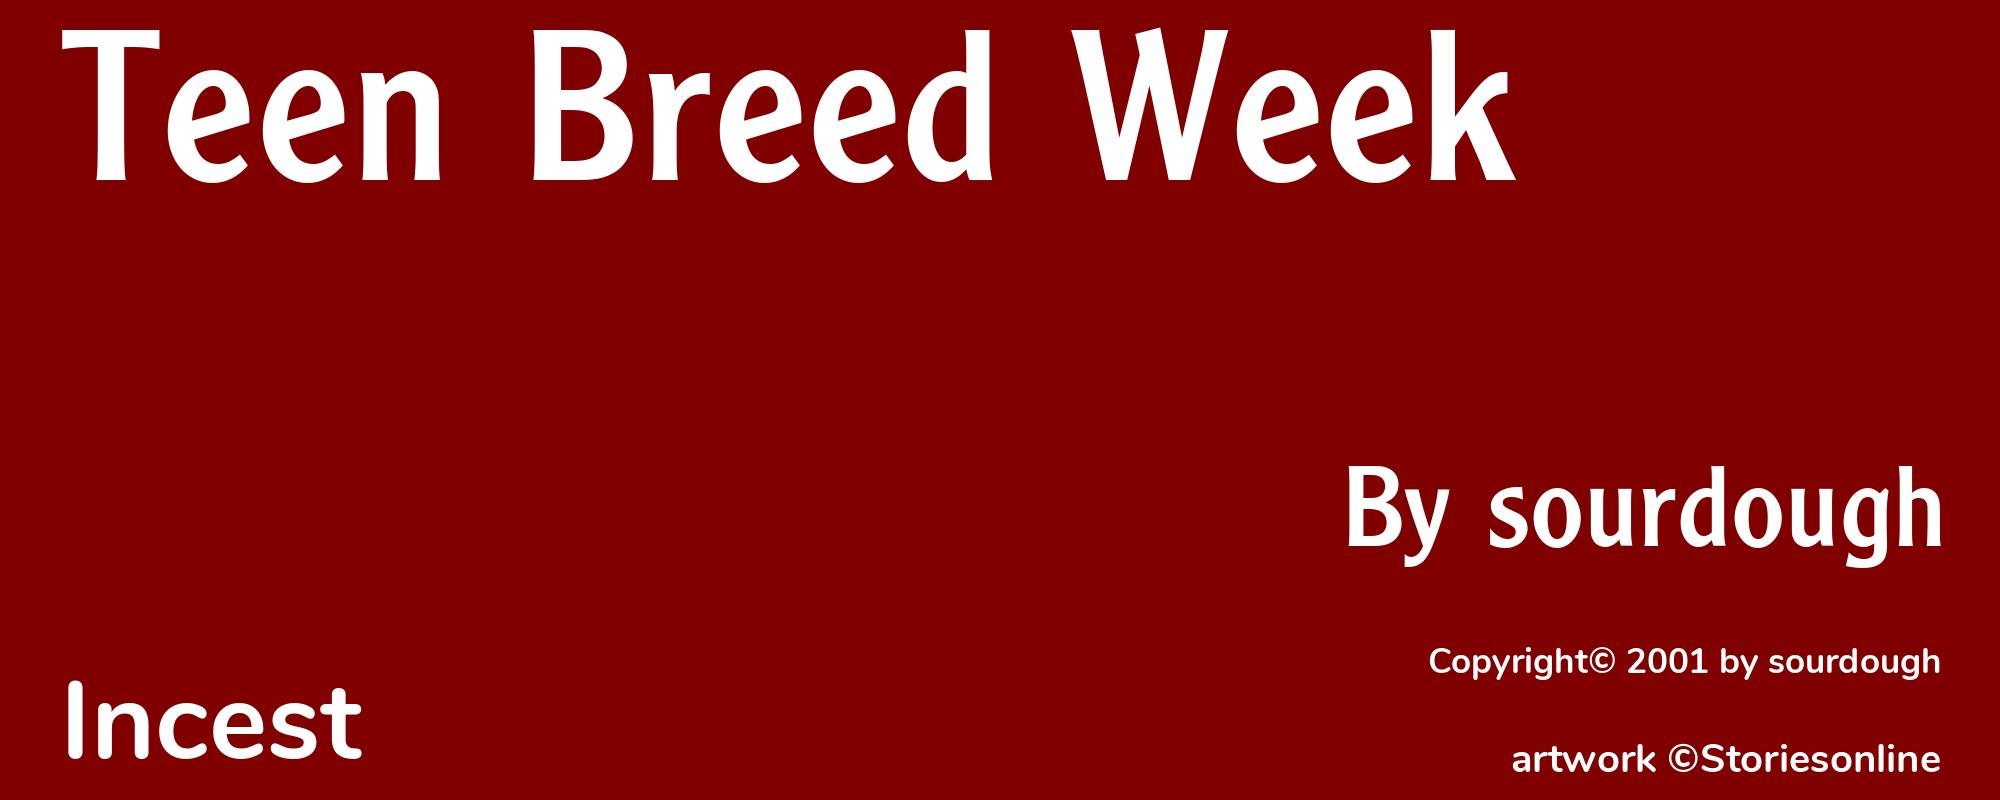 Teen Breed Week - Cover